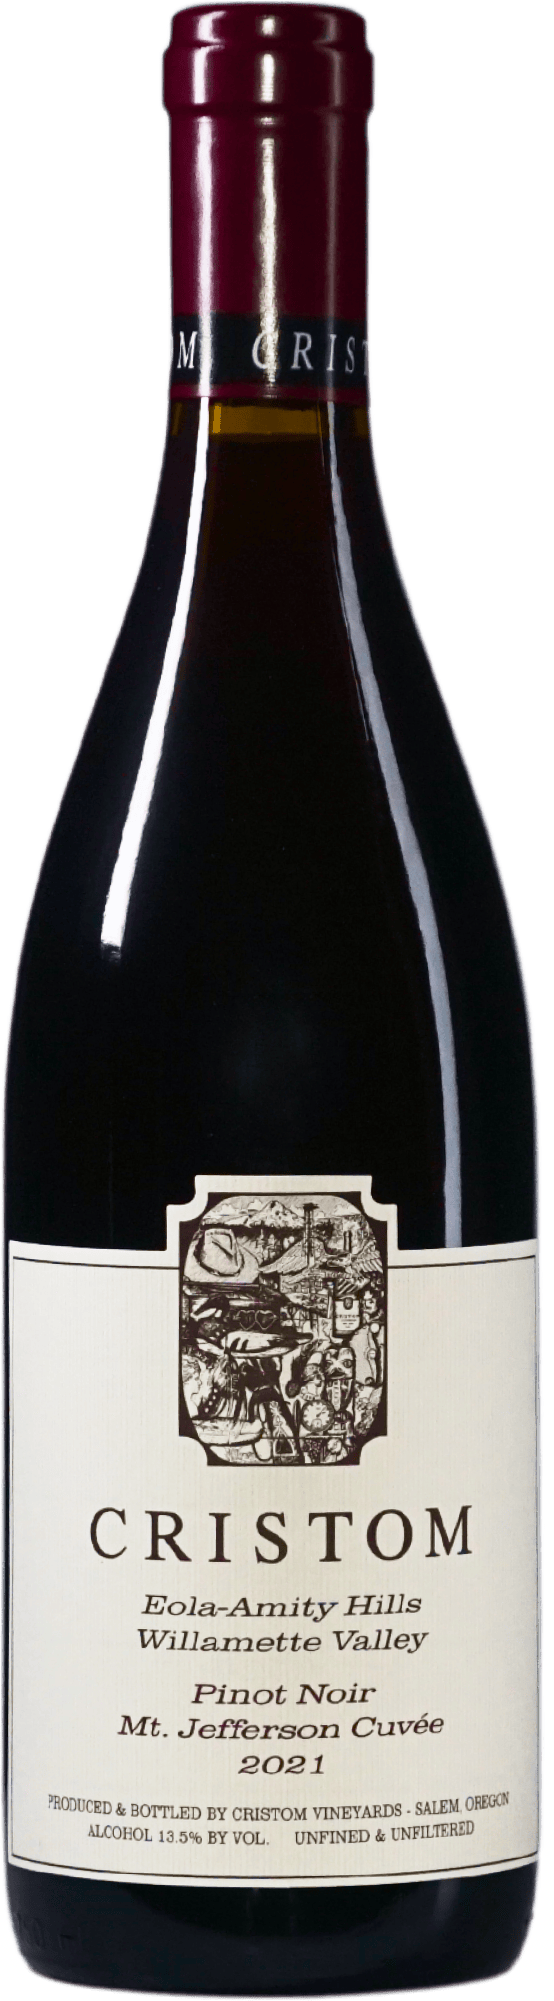 Mt. Jefferson Cuvée Pinot Noir